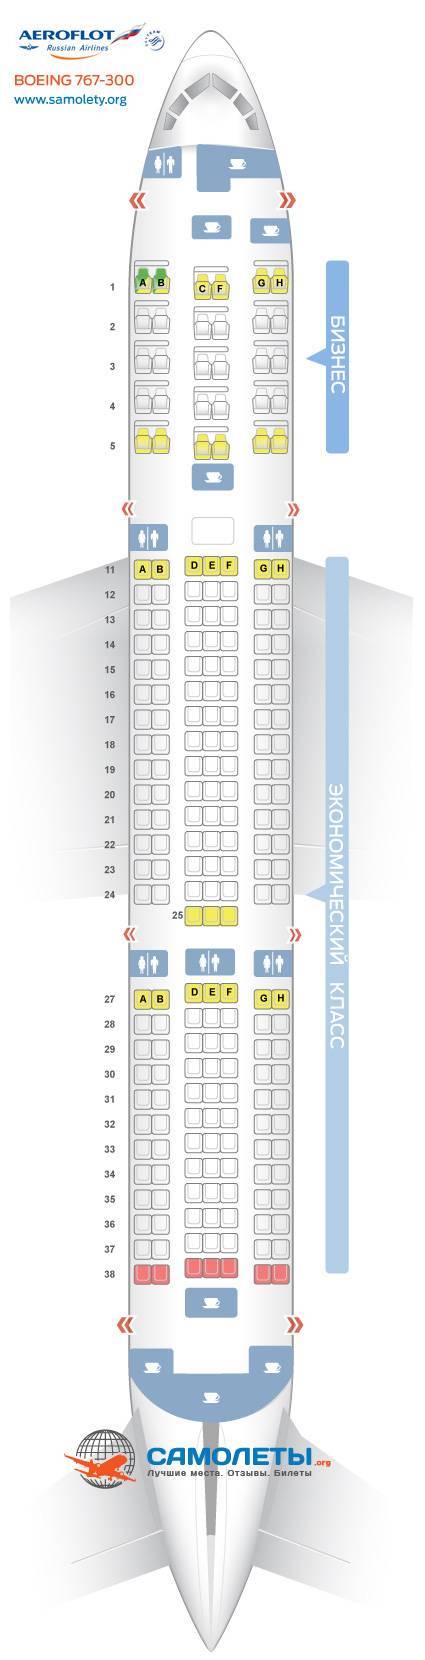 Схема салона и лучшие места в самолете боинг 737-300